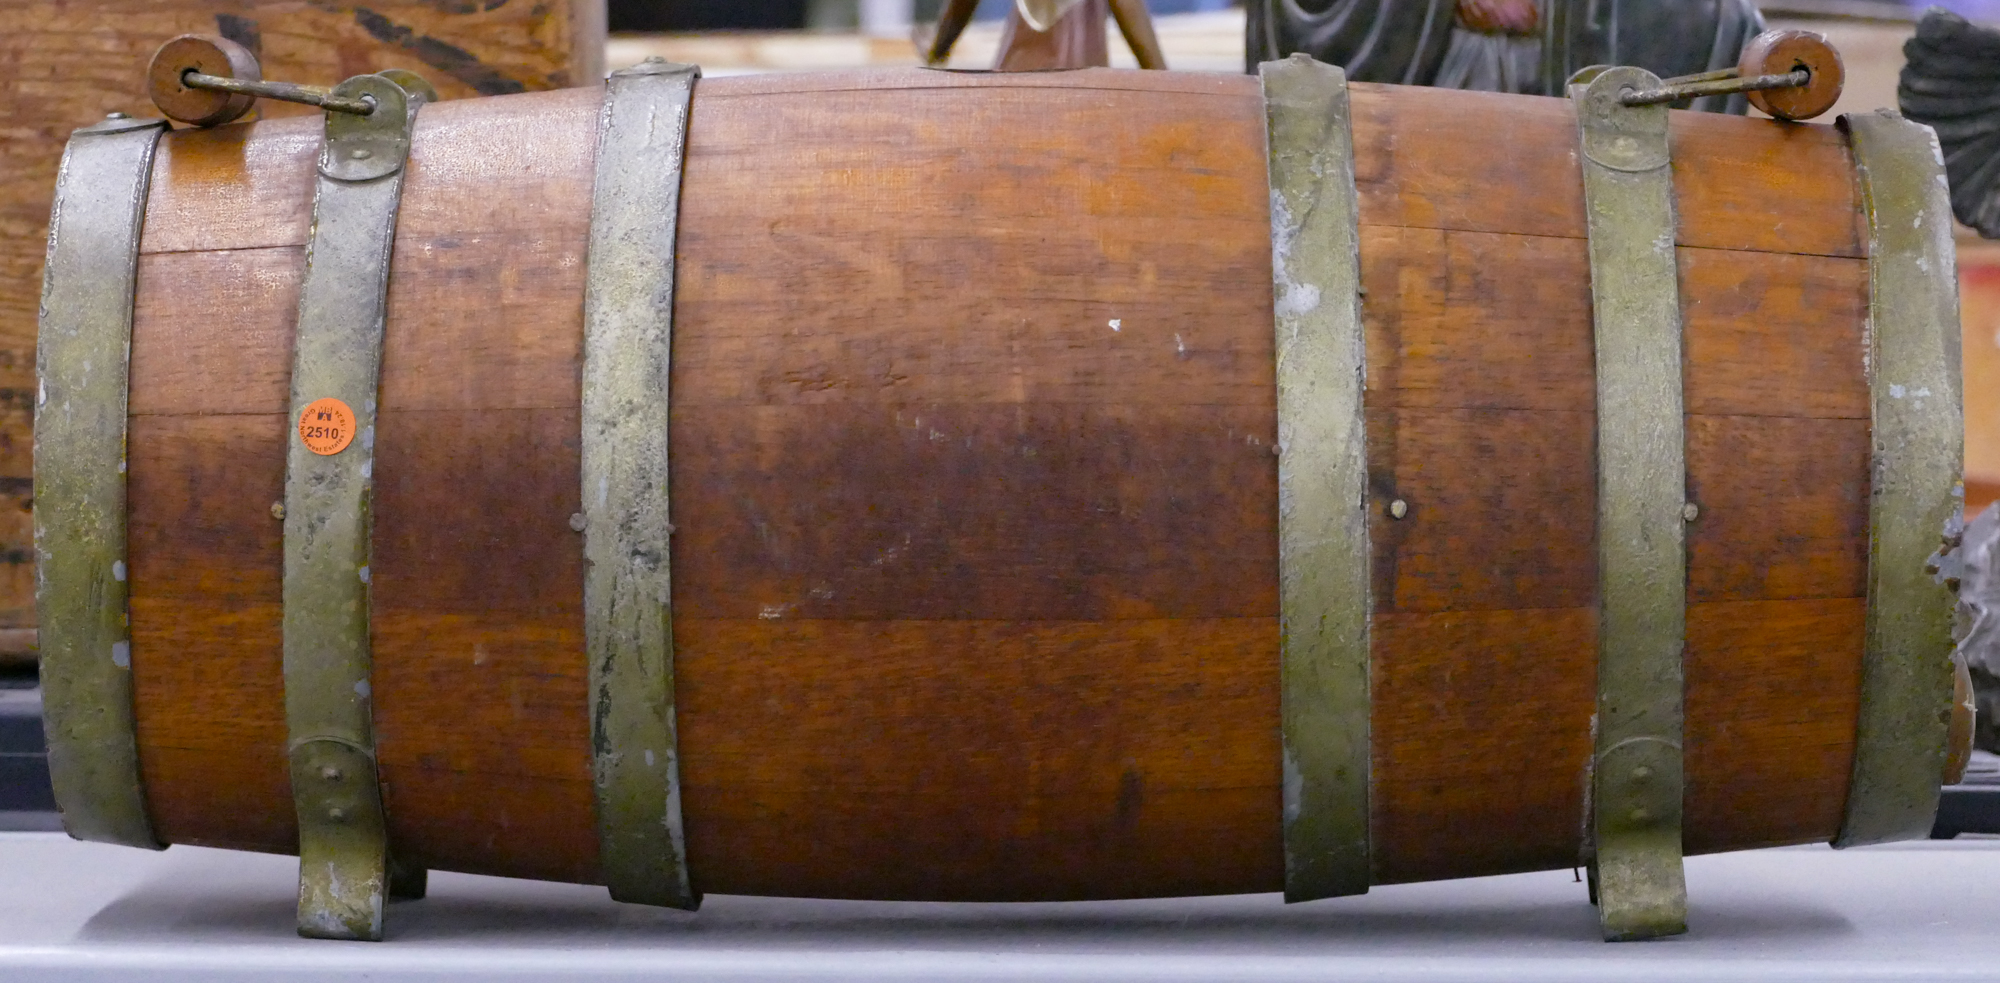 Anitque Oak Handled Barrel Cask 3cfca2